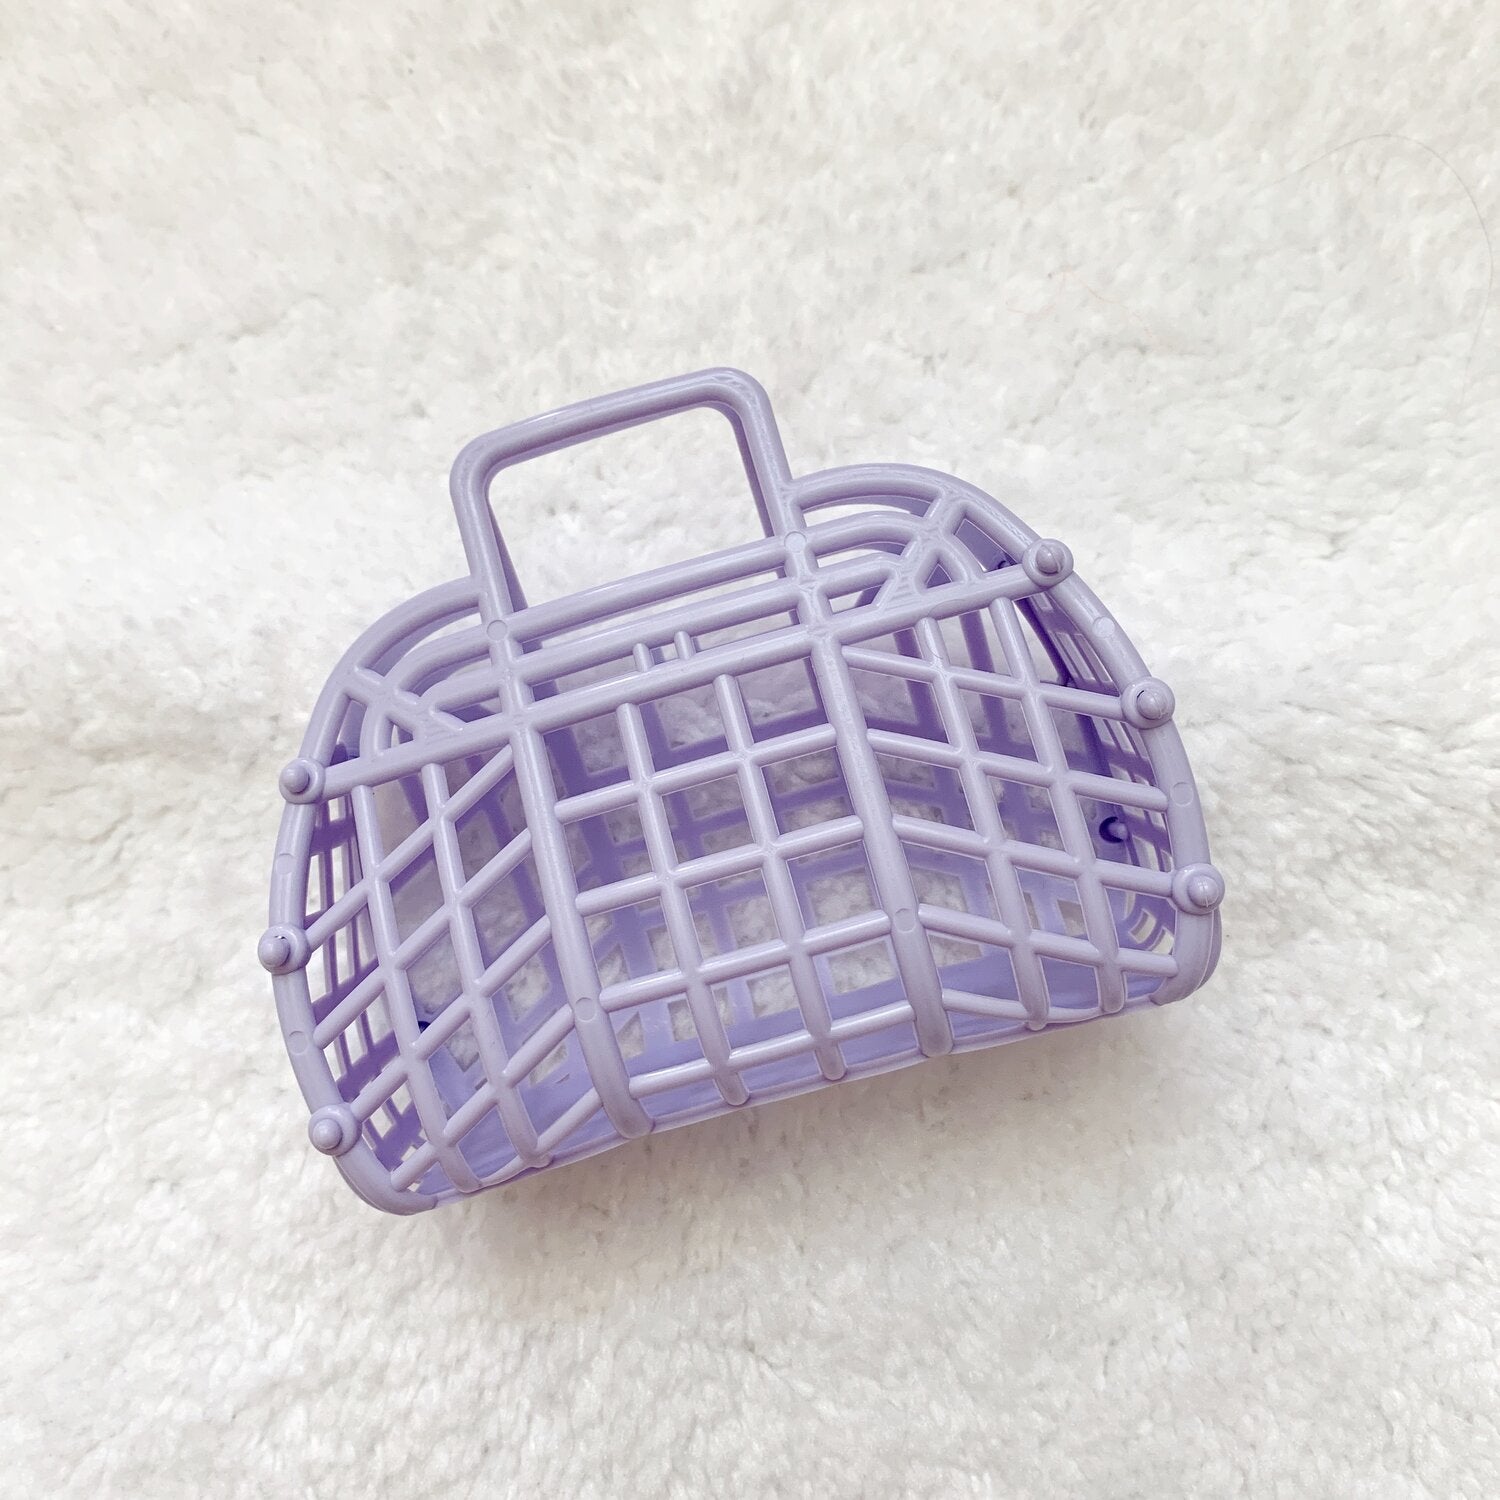 Jelly Retro Basket - Mini 6 Peach